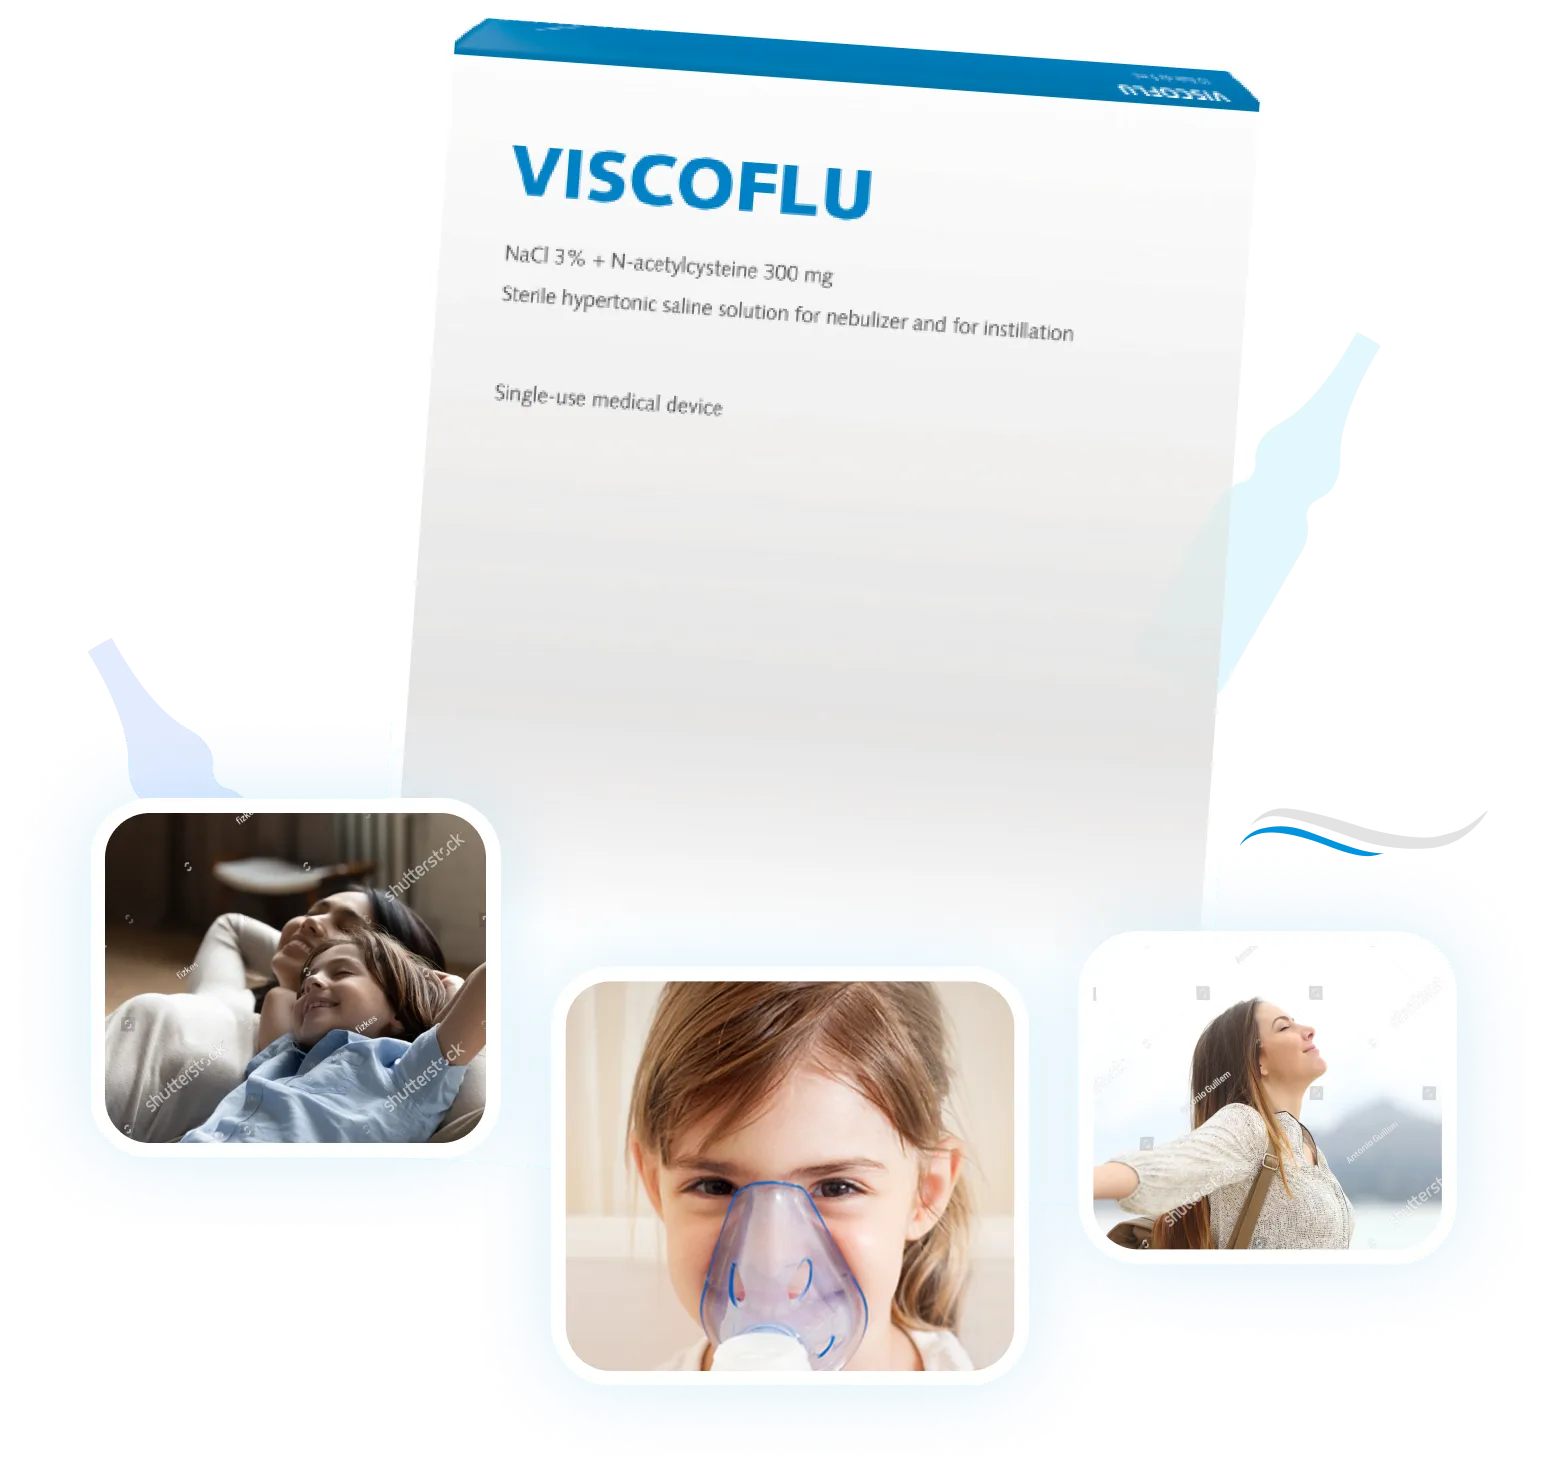 Termékkép 'Viscoflu' felirattal, 3db képpel alatta, boldog család, inhalátort használó kislány, távólba tekinktő fiatal lány